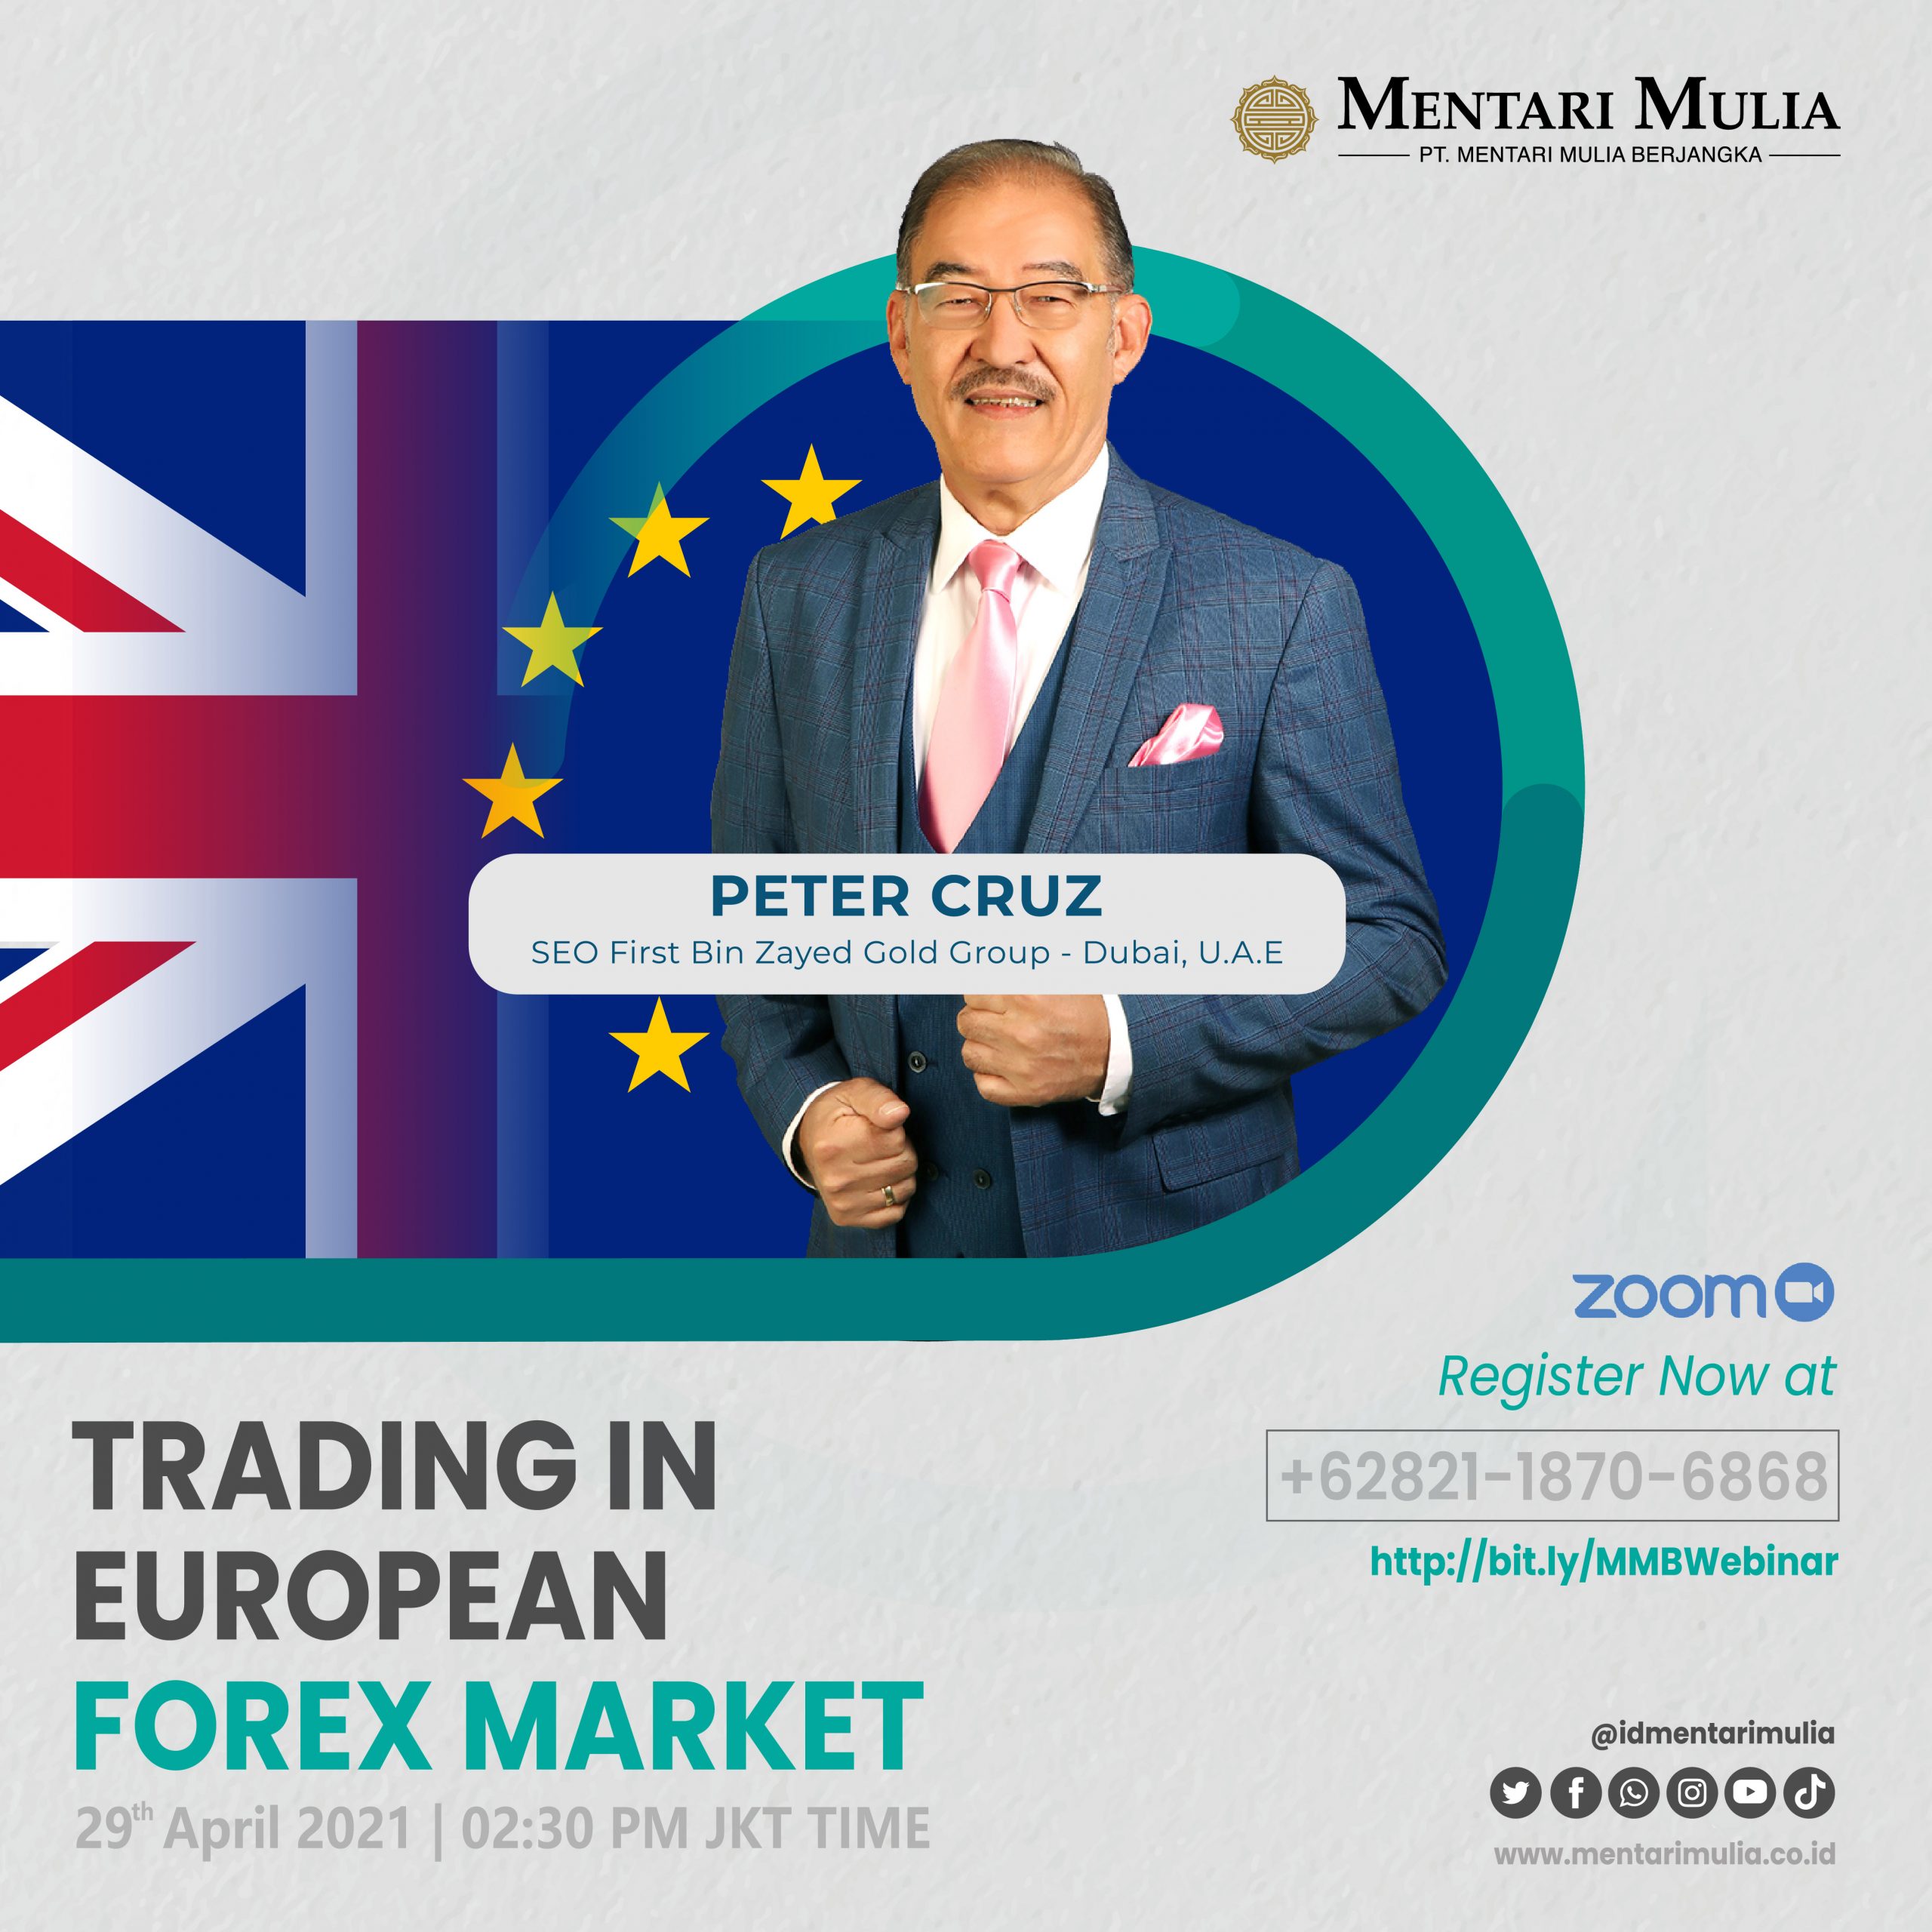 Seminar “Trading Forex di Pasar Eropa” Bersama Peter Cruz Sukses Menarik Perhatian Para Trader